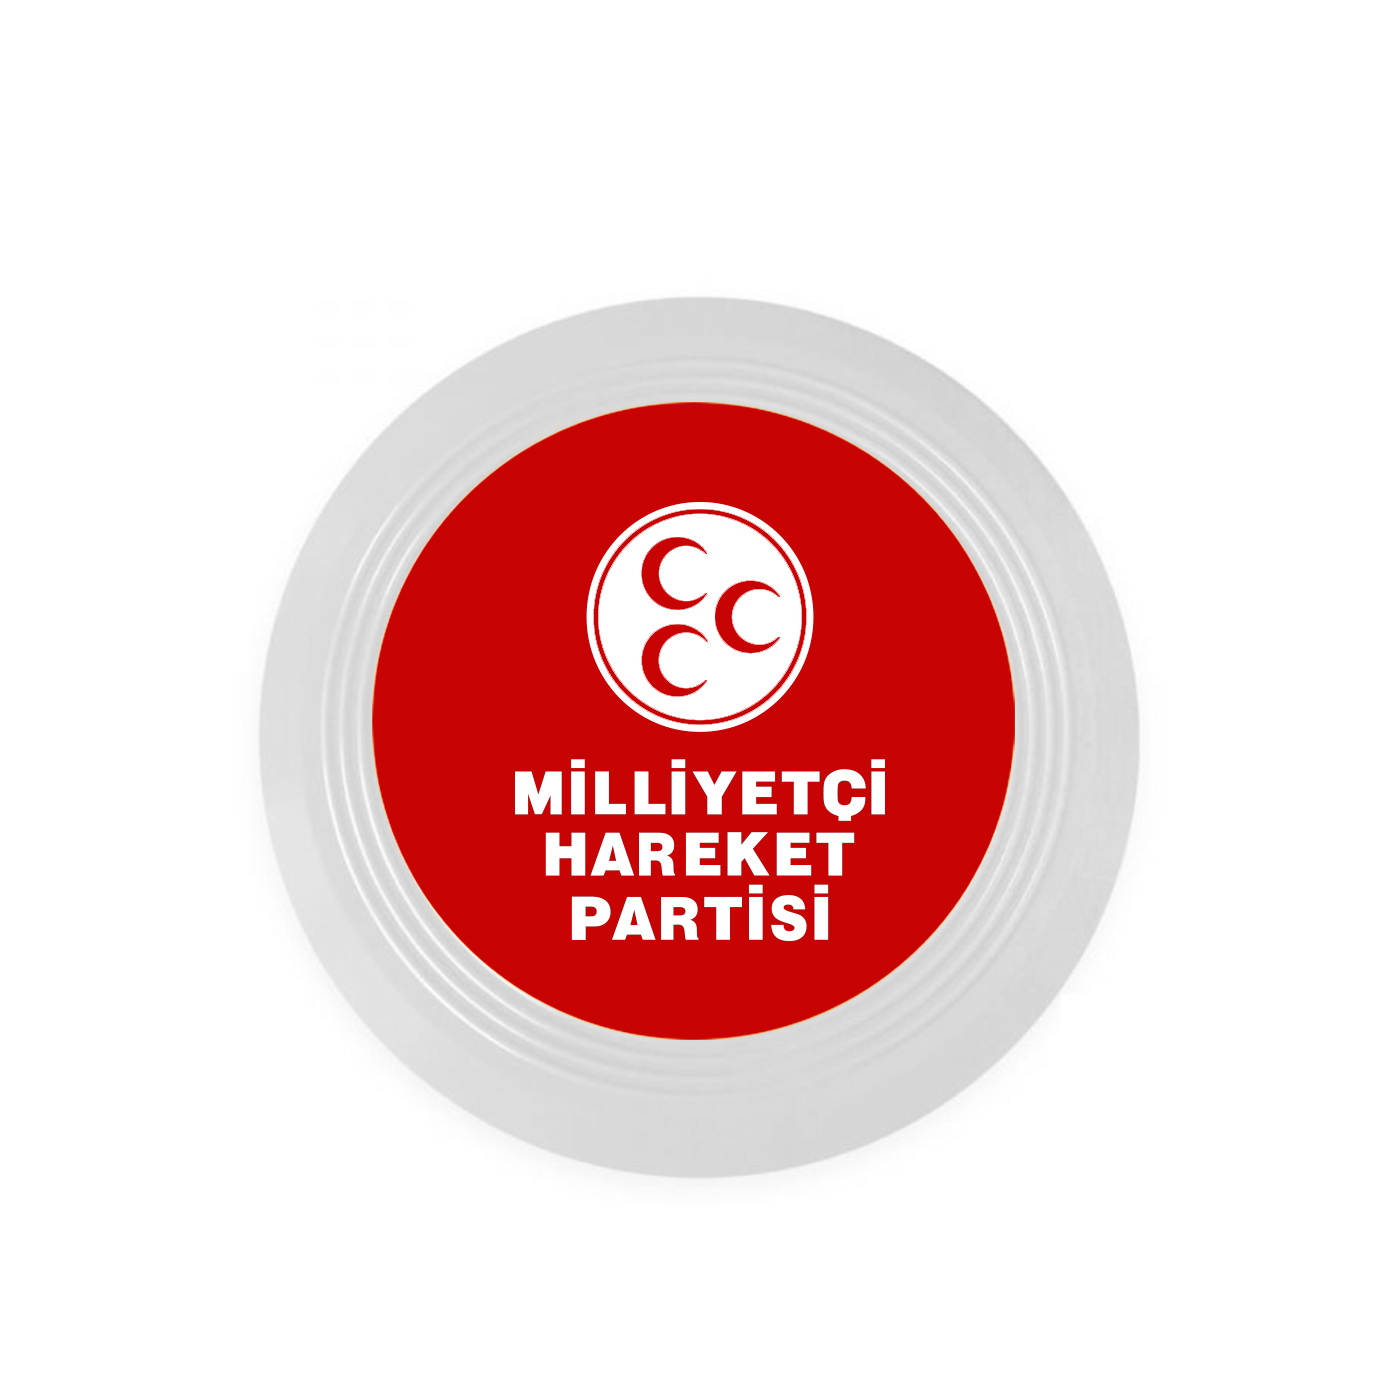 MHP Logo Baskılı Frizbi